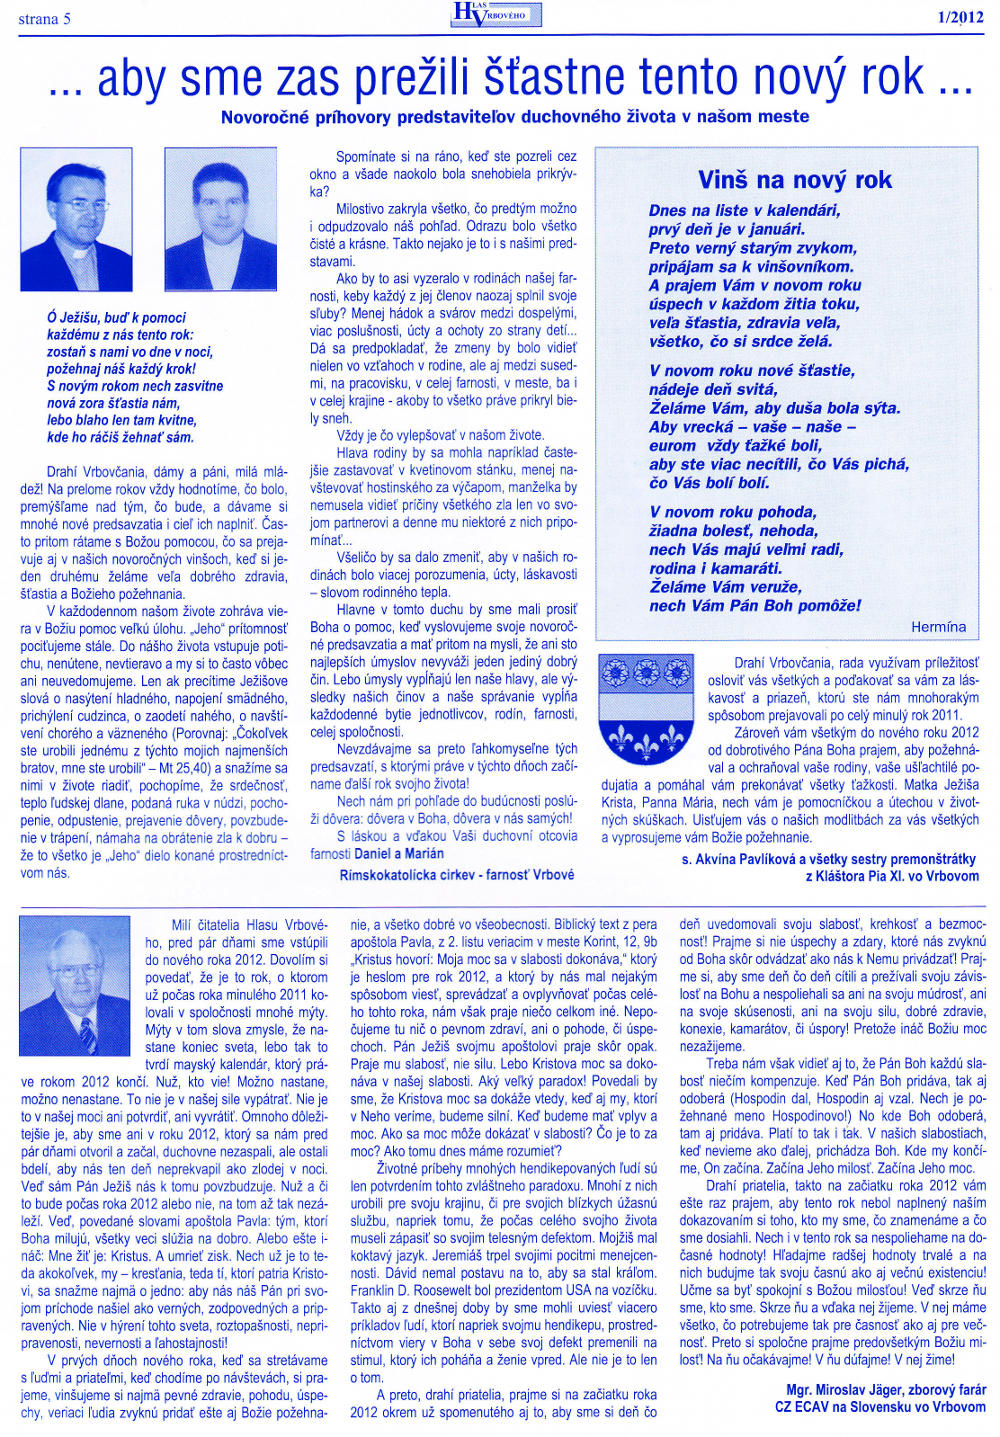 Hlas Vrbového 01/2012, strana 5